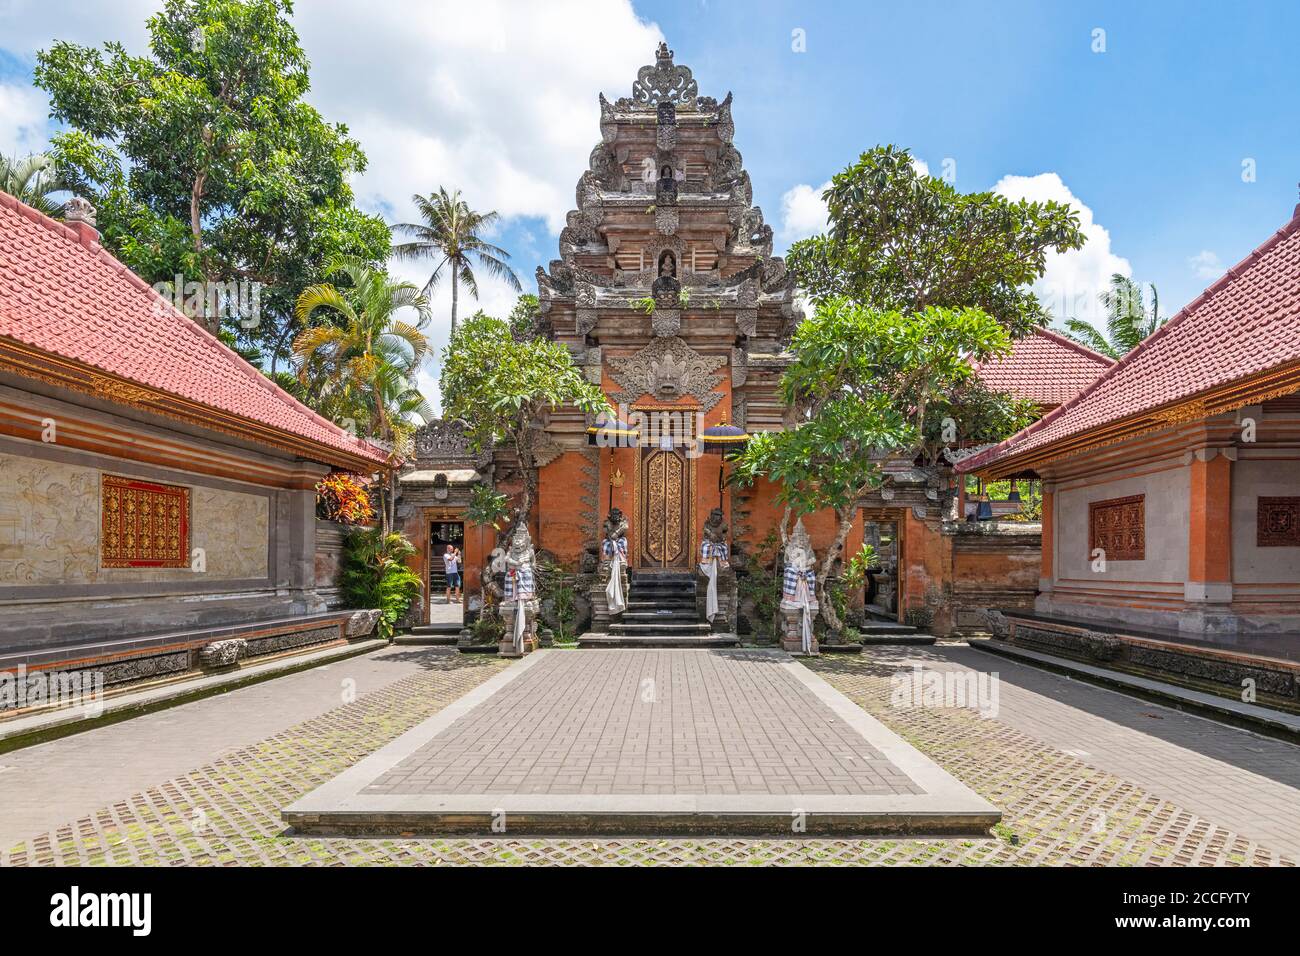 Il Palazzo di Ubud, ufficialmente Puri Saren Agung, è un complesso di edifici storici situato a Ubud, la reggenza di Gianyar di Bali, Indonesia. Il palazzo era il Th Foto Stock